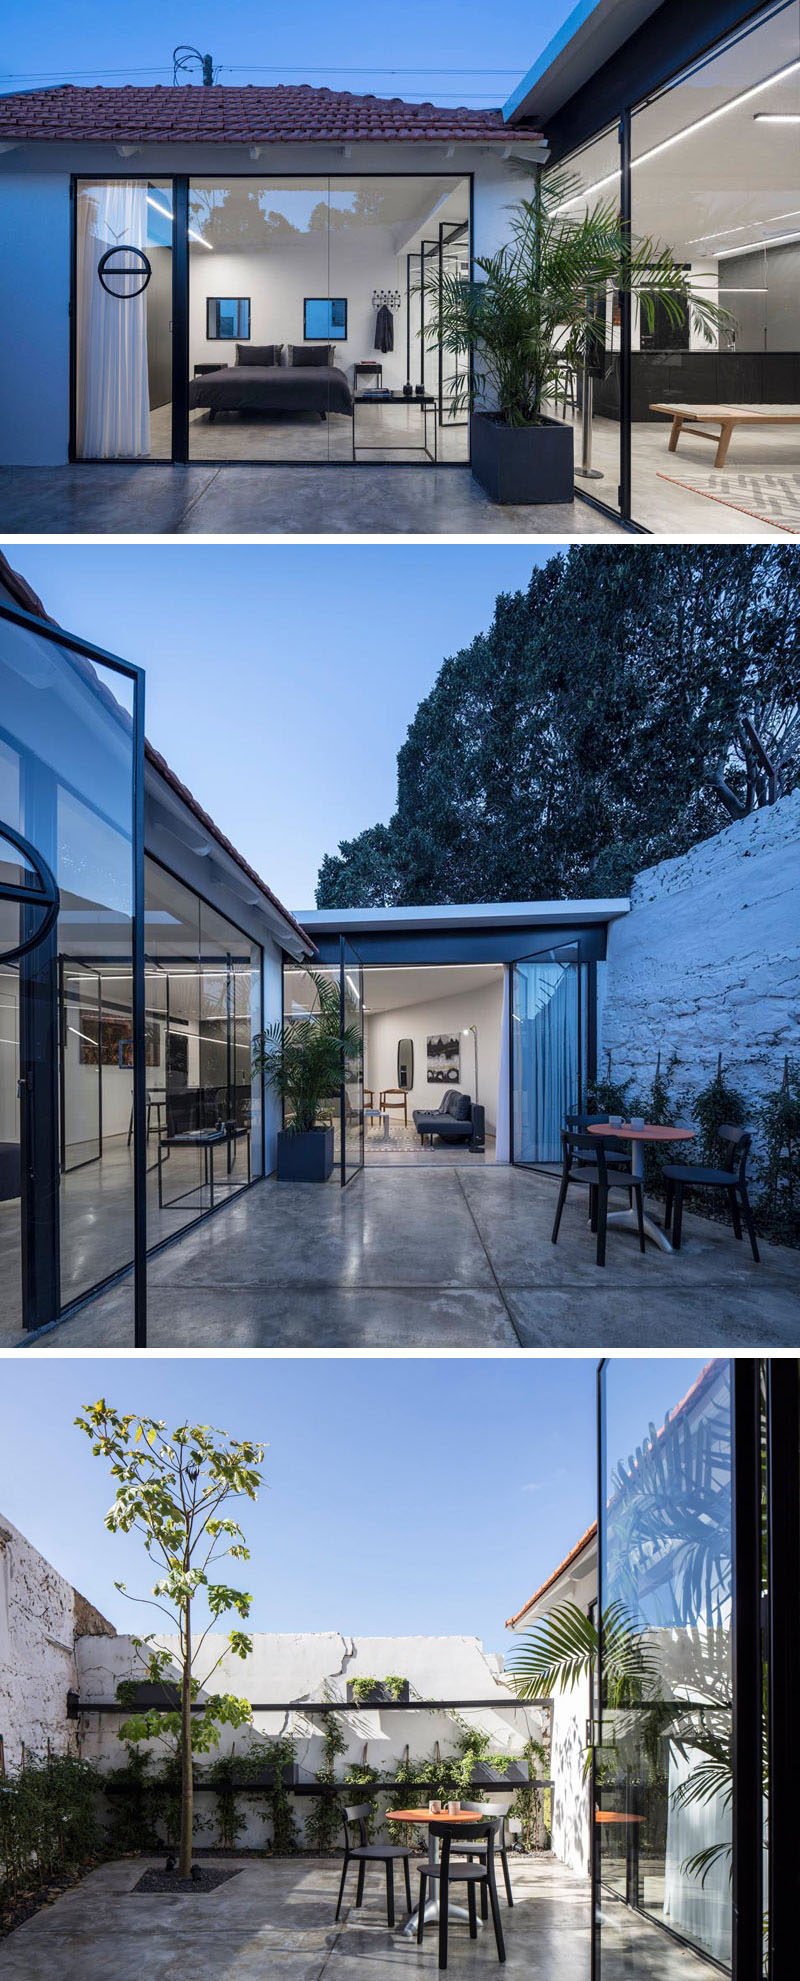  Стеклянные распашные двери открывают современный интерьер этого небольшого дома в частный дворик. #Patio #OutdoorSpace 